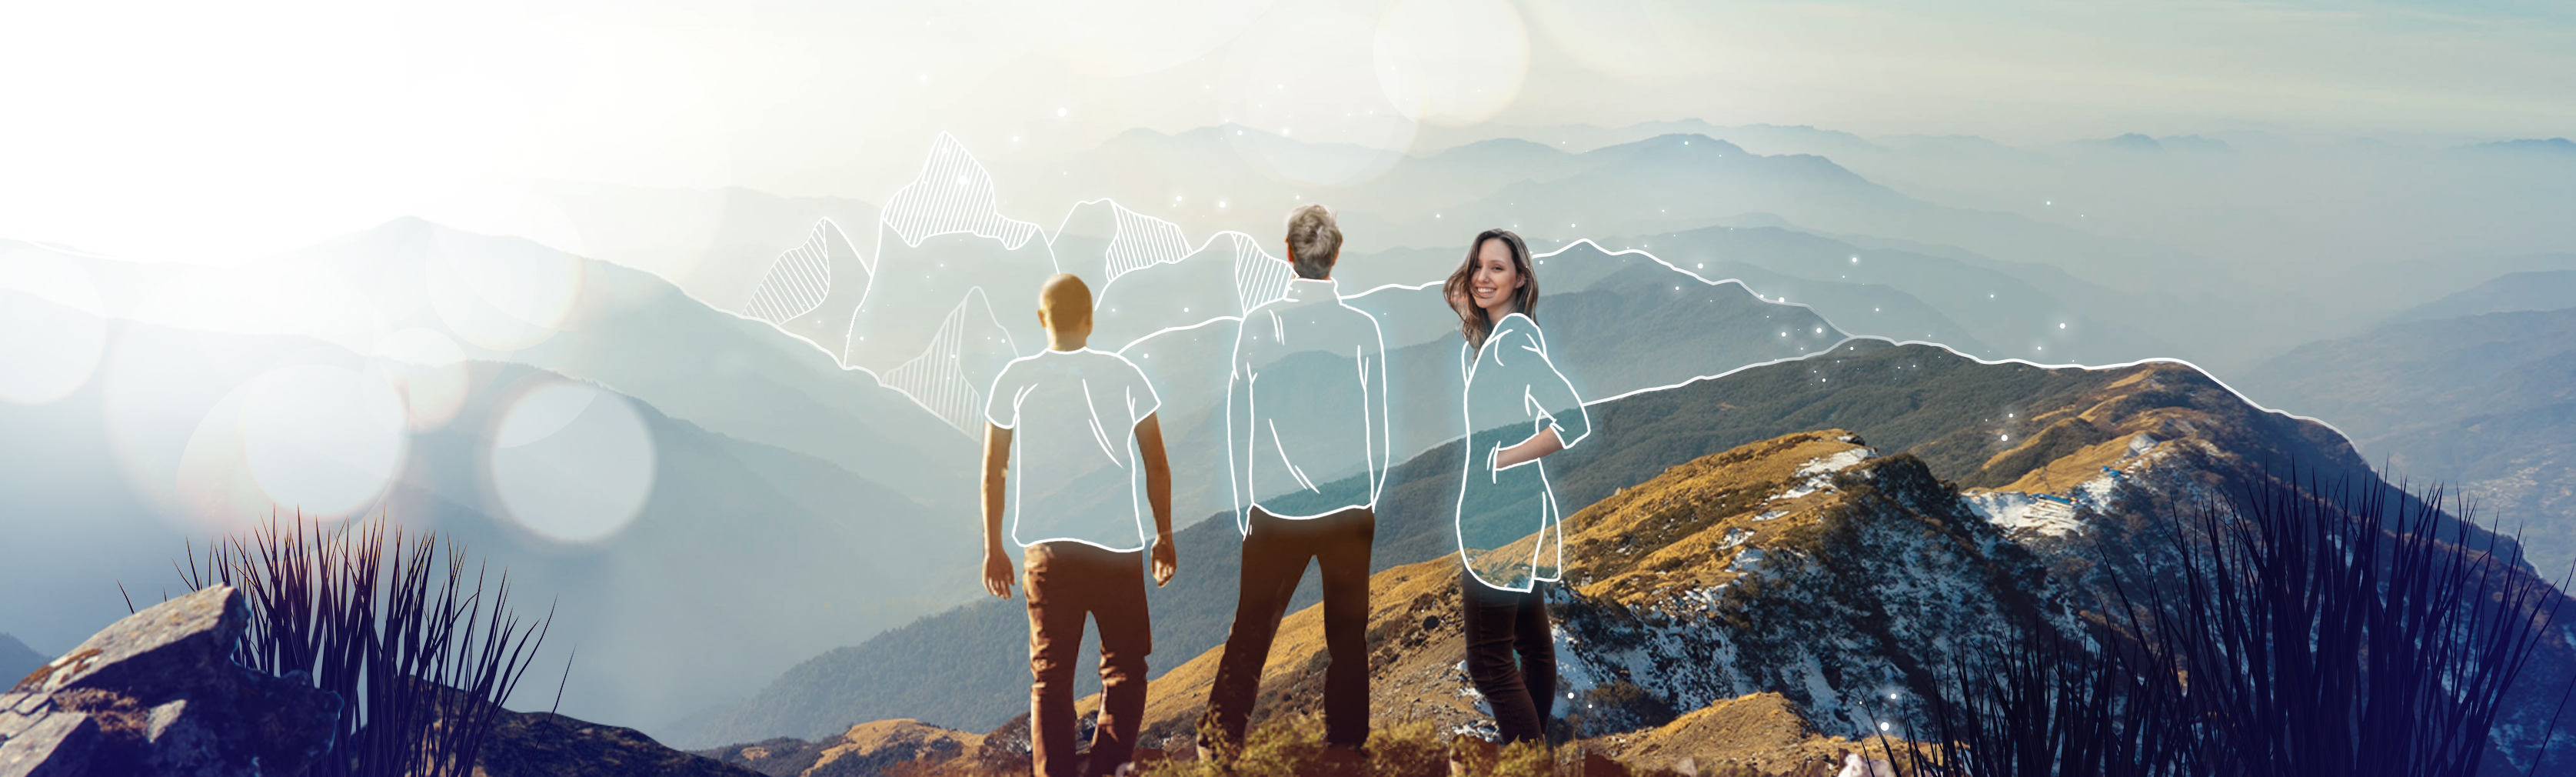 Foto-Illustration von 3 Menschen auf einem Berg